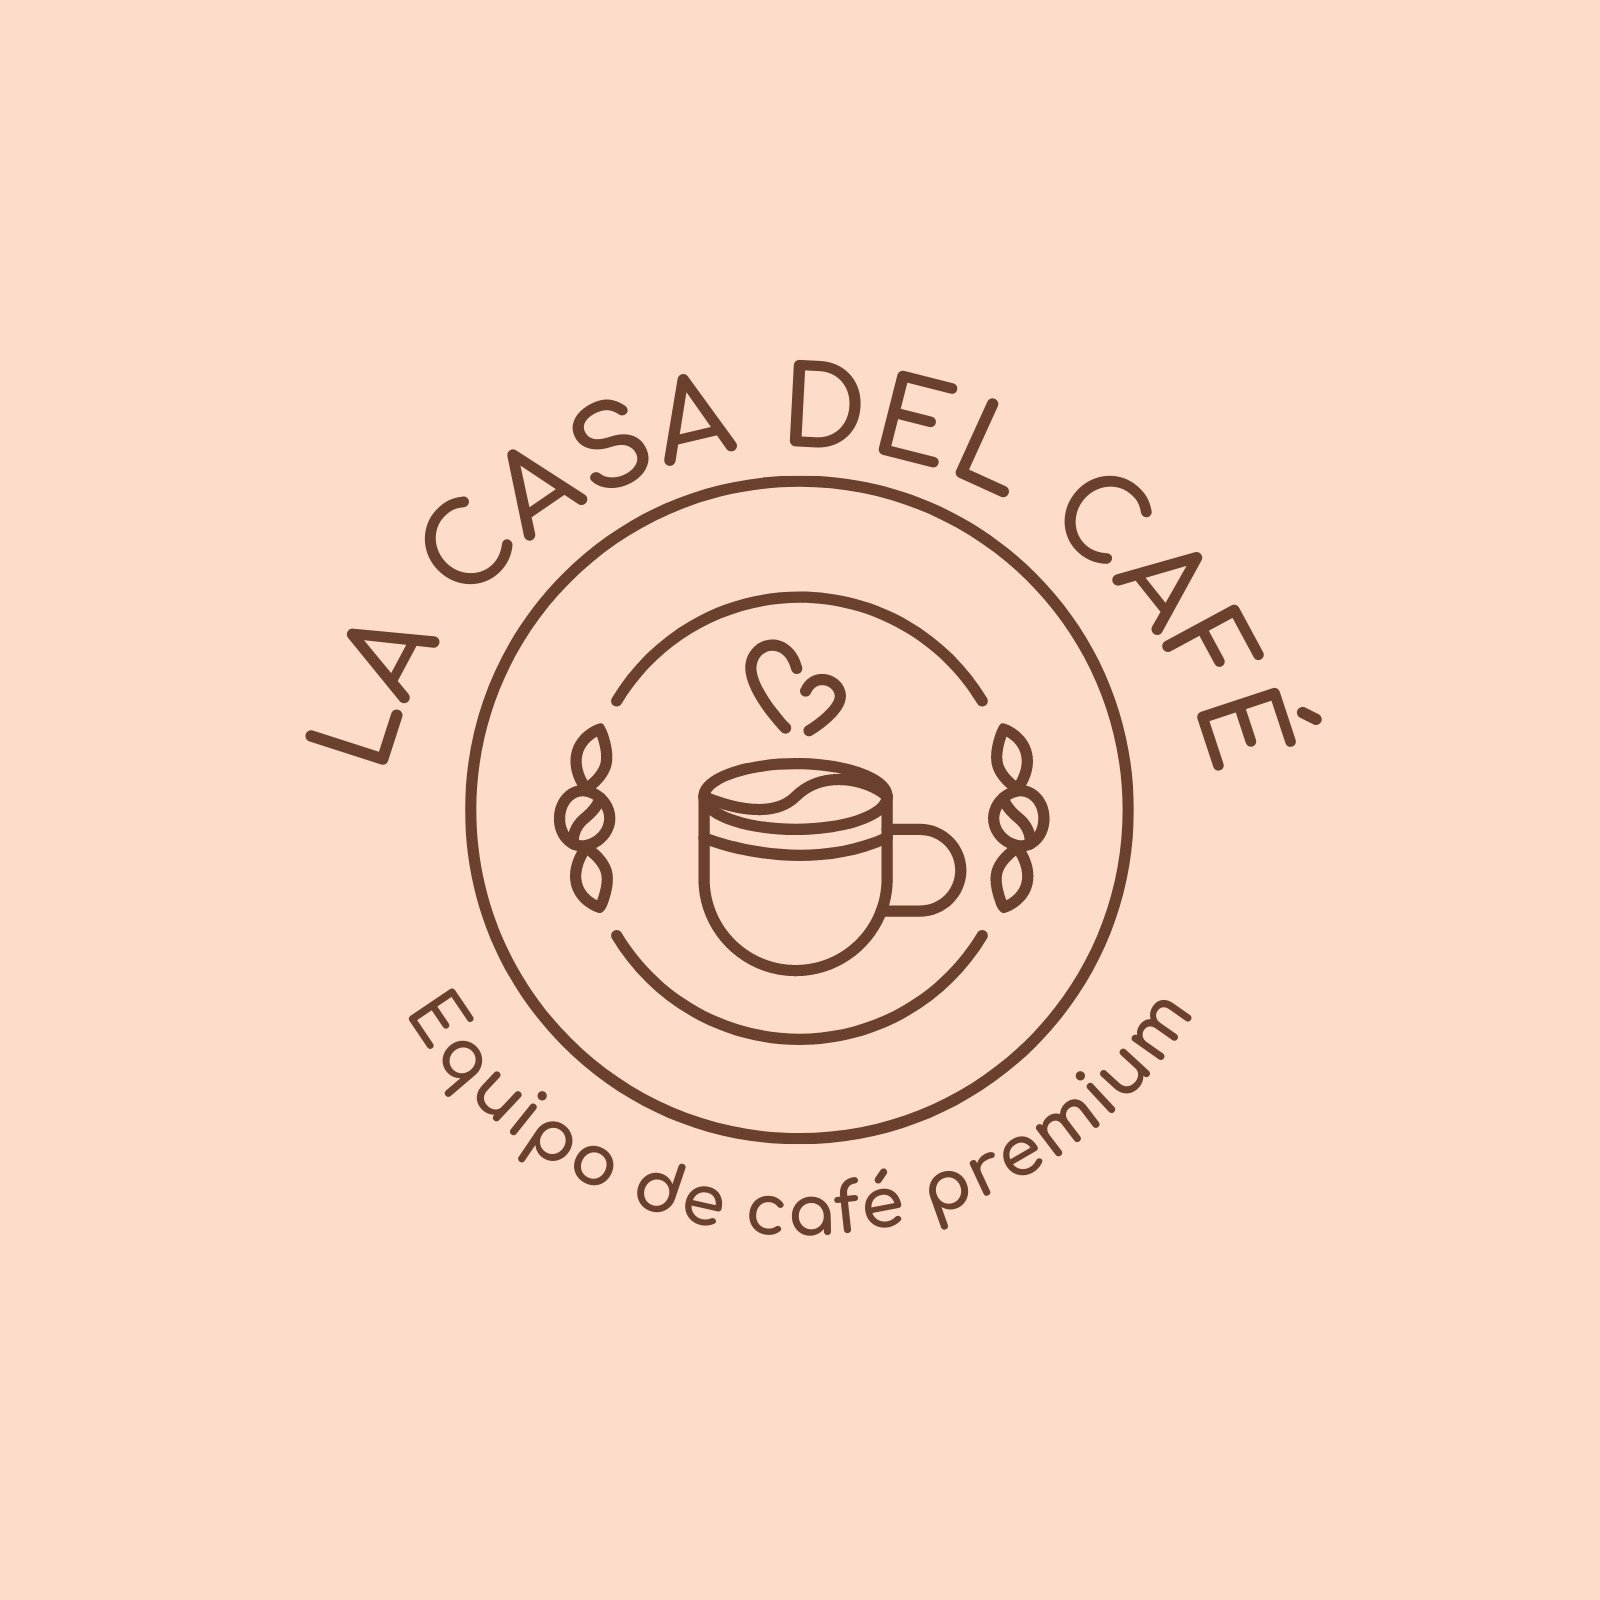 Plantillas para logos de cafetería personalizables | Canva